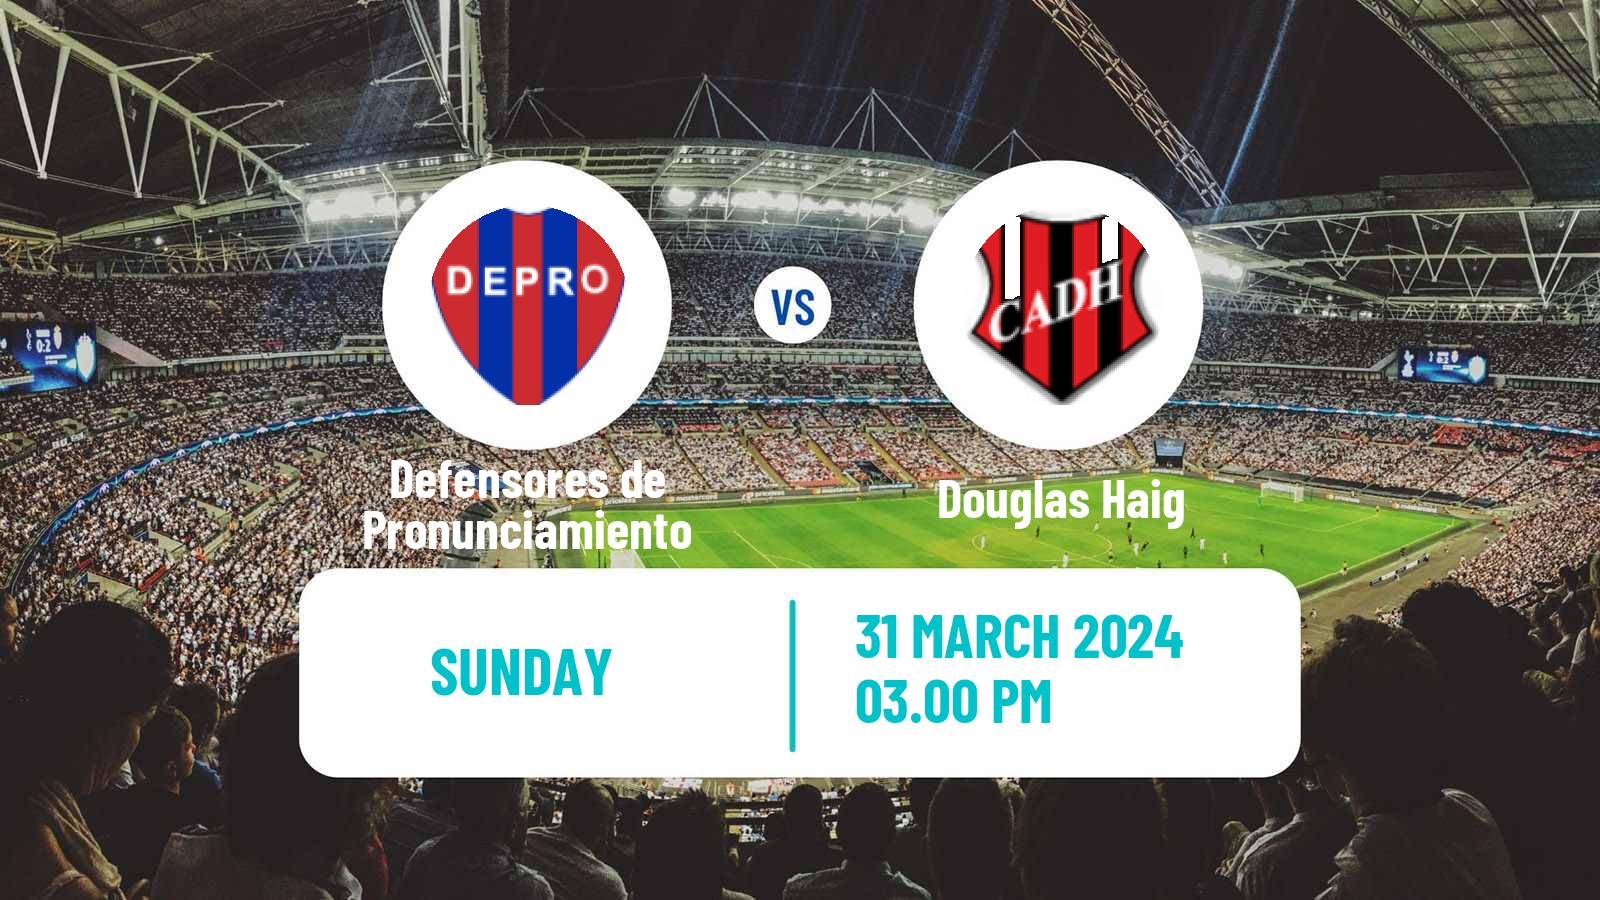 Soccer Argentinian Torneo Federal Defensores de Pronunciamiento - Douglas Haig